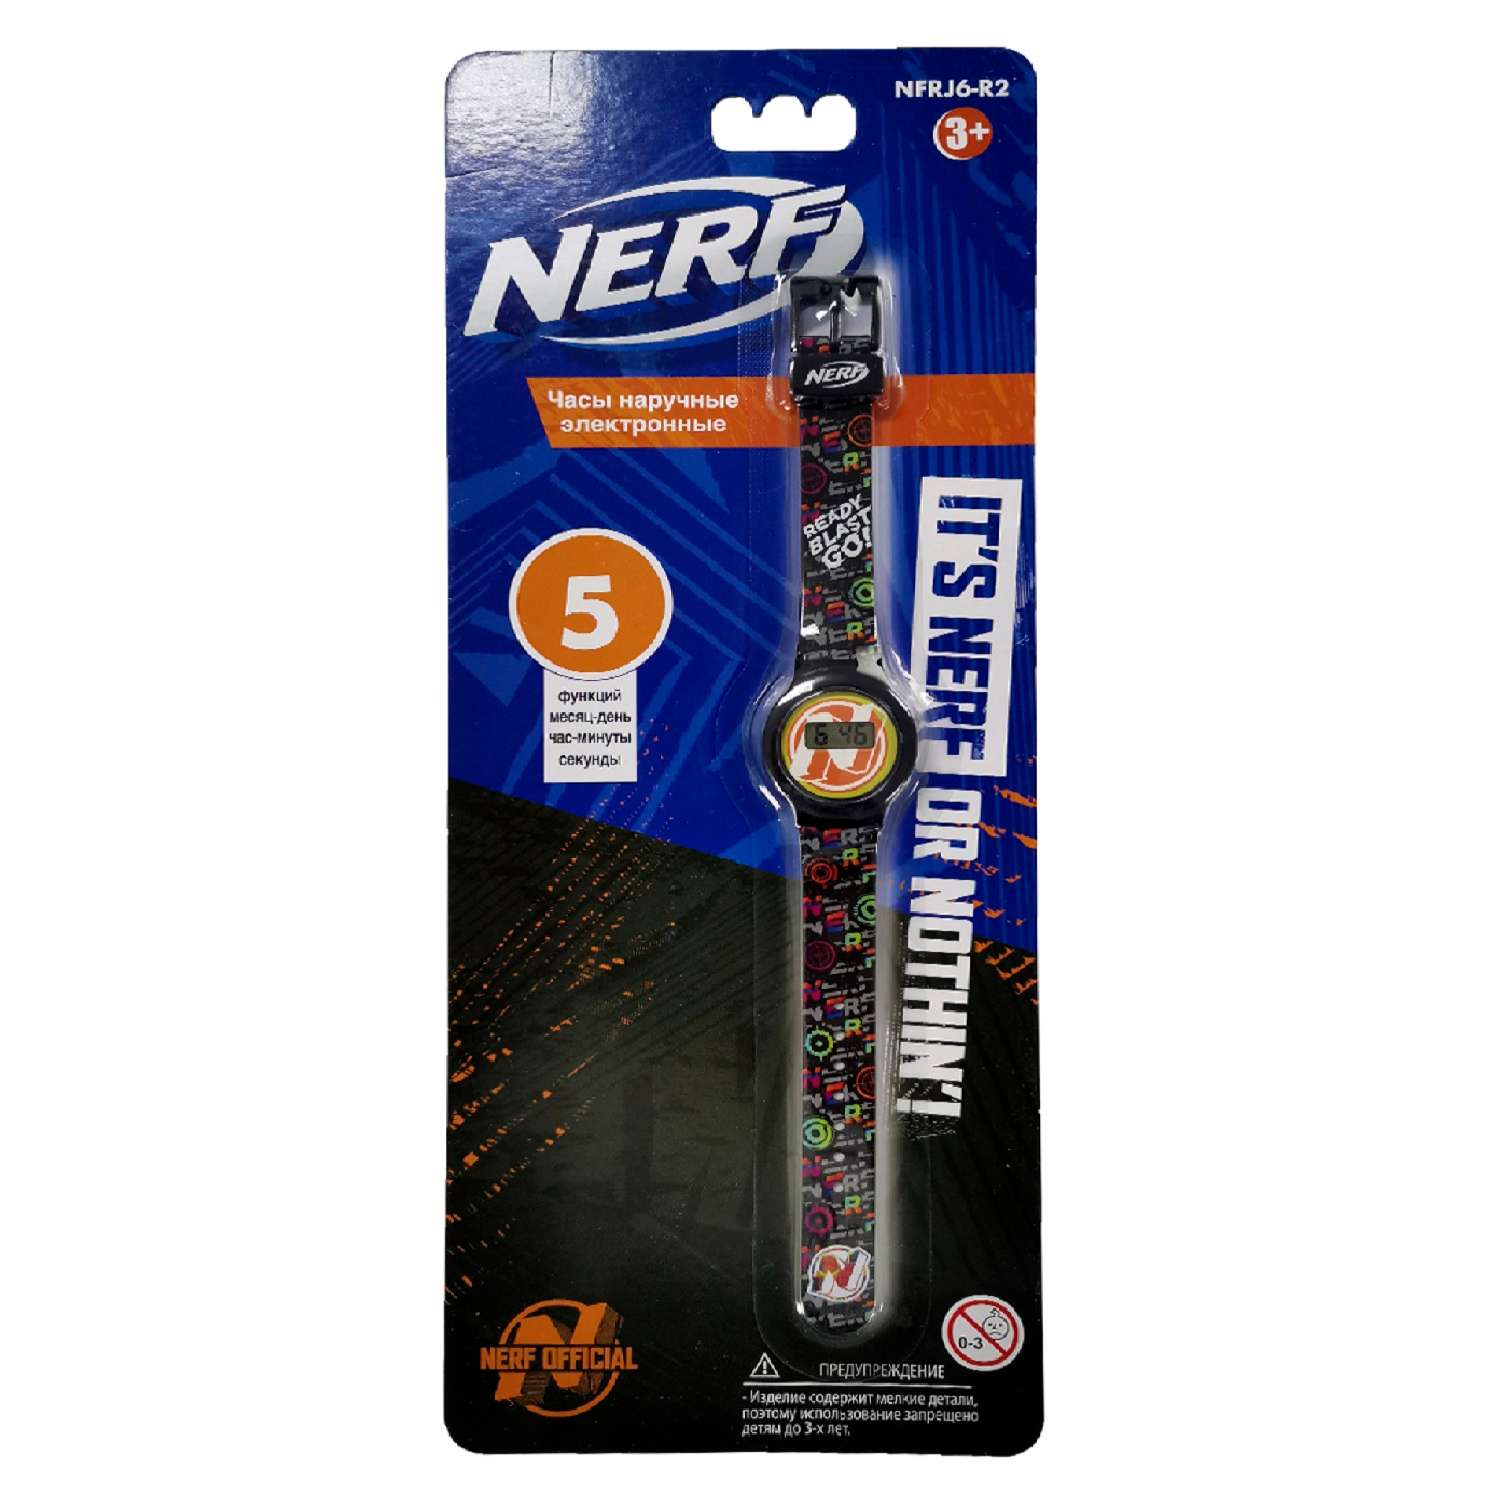 Часы наручные электронные Hasbro(Nerf) NFRJ6-R2 - фото 2